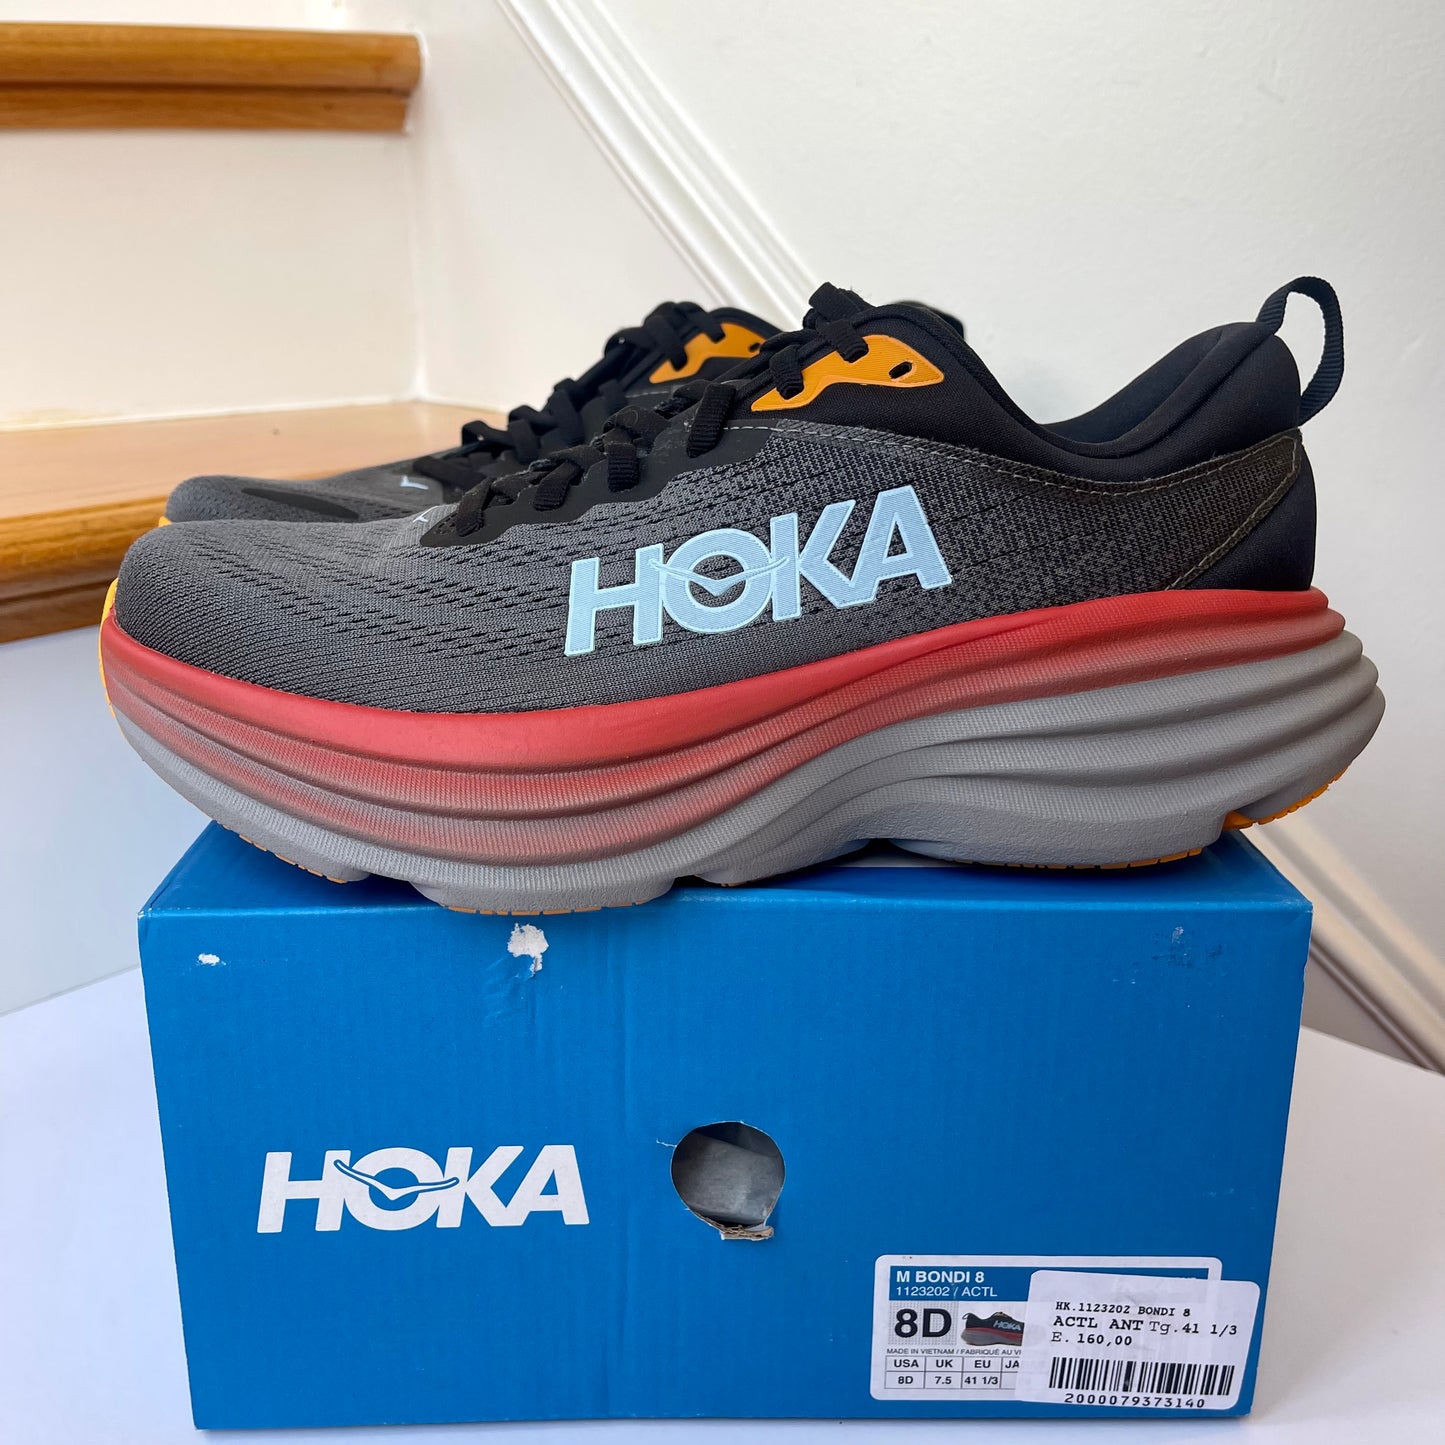 Hoka Bondi 8 Running Shoes Castlerock / Anthracite Grey Hoka One One